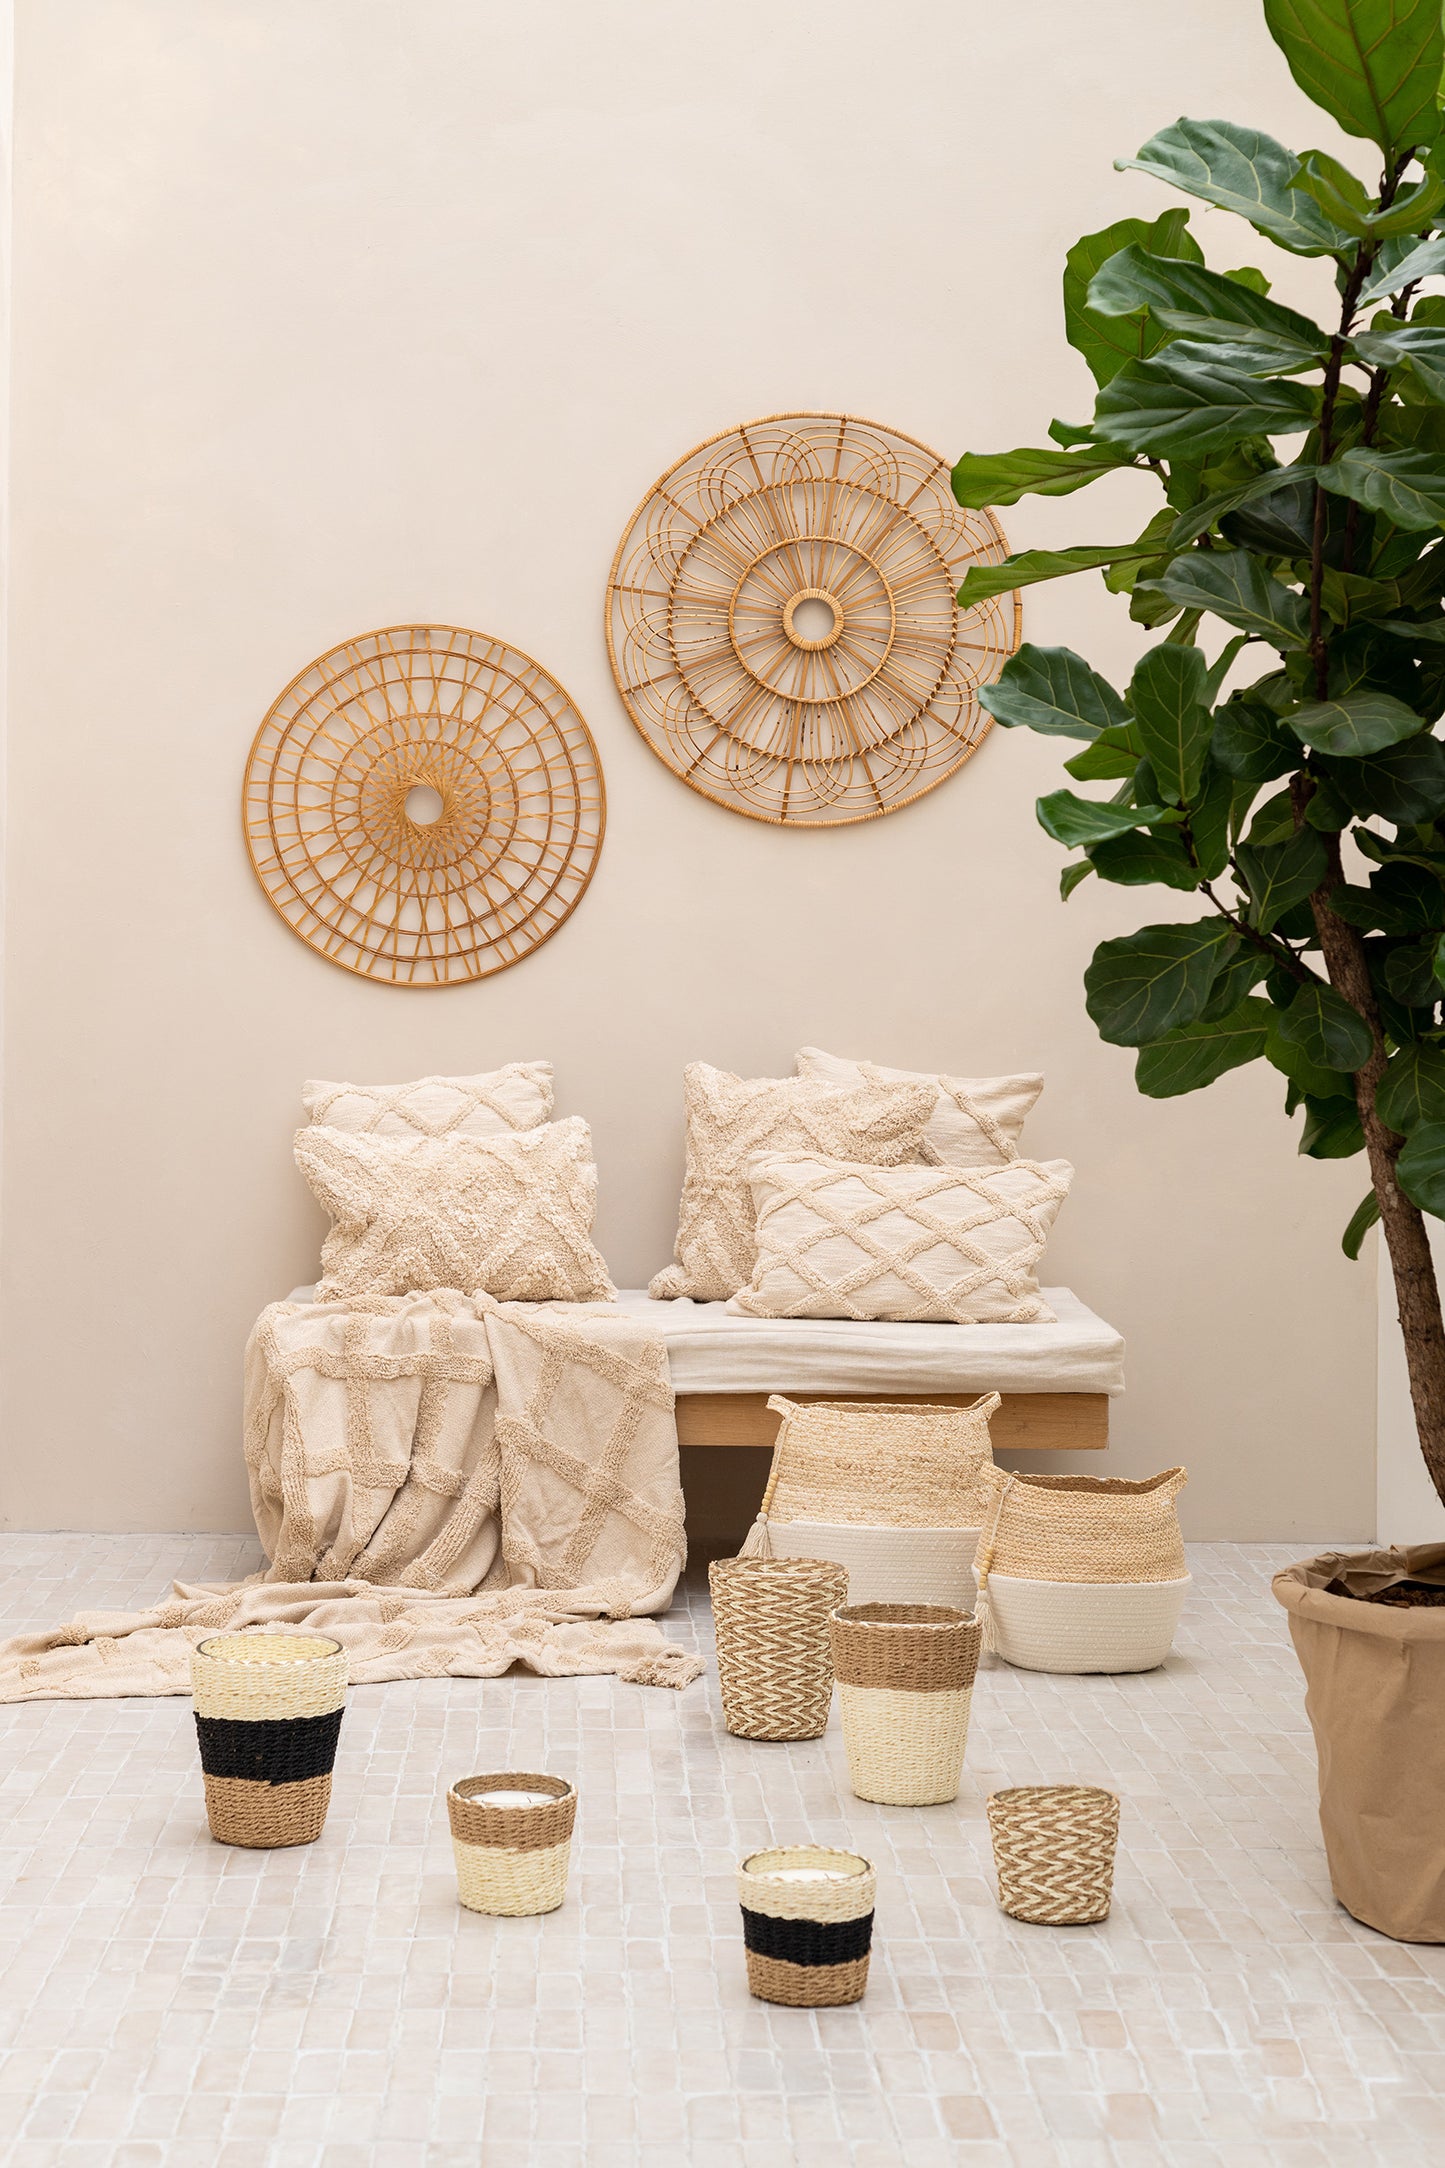 Kissen aus Baumwolle in creme weiß mit 3D Rautenmuster auf Sitzbank mit Dekoration im Boho Design